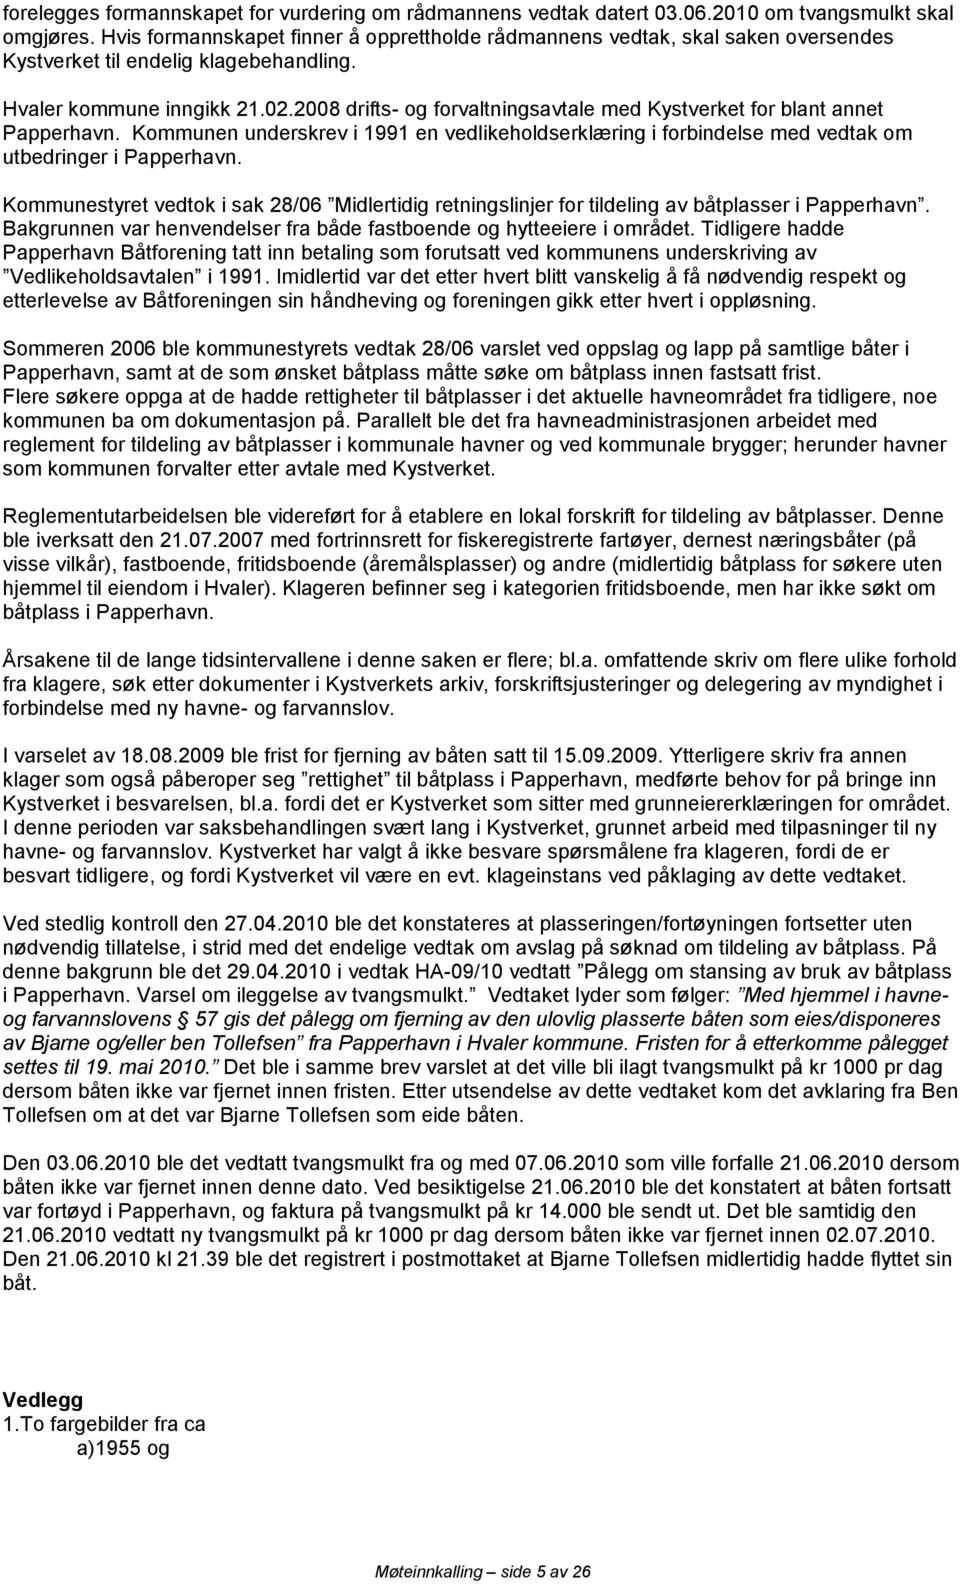 2008 drifts- og forvaltningsavtale med Kystverket for blant annet Papperhavn. Kommunen underskrev i 1991 en vedlikeholdserklæring i forbindelse med vedtak om utbedringer i Papperhavn.